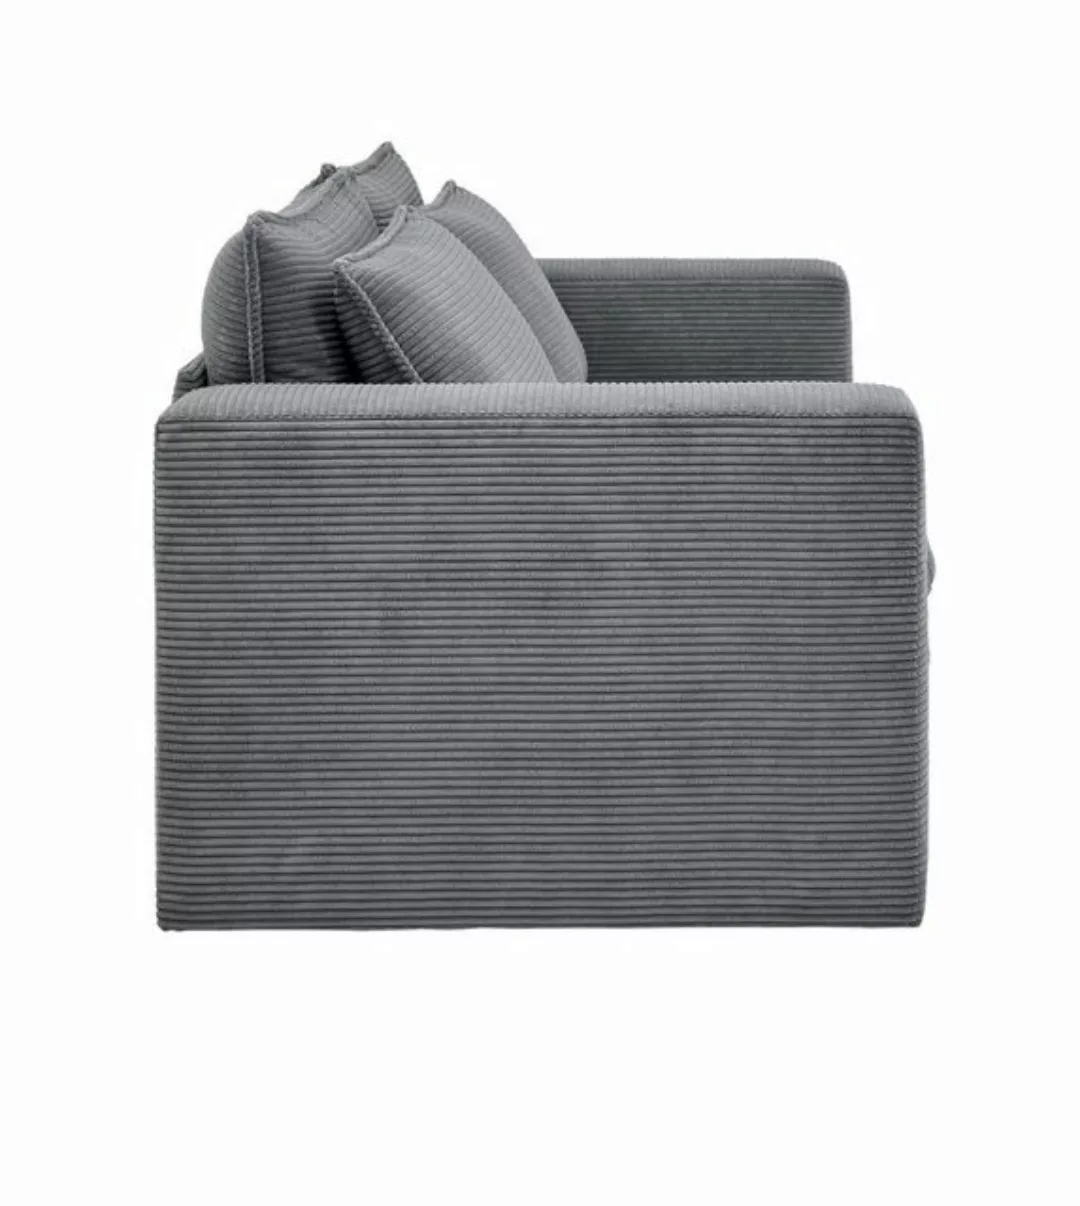 Furn.Design Sofa Pesaro, Couch 2-Sitzer Cordbezug, 4 Farben, wahlweise mit günstig online kaufen